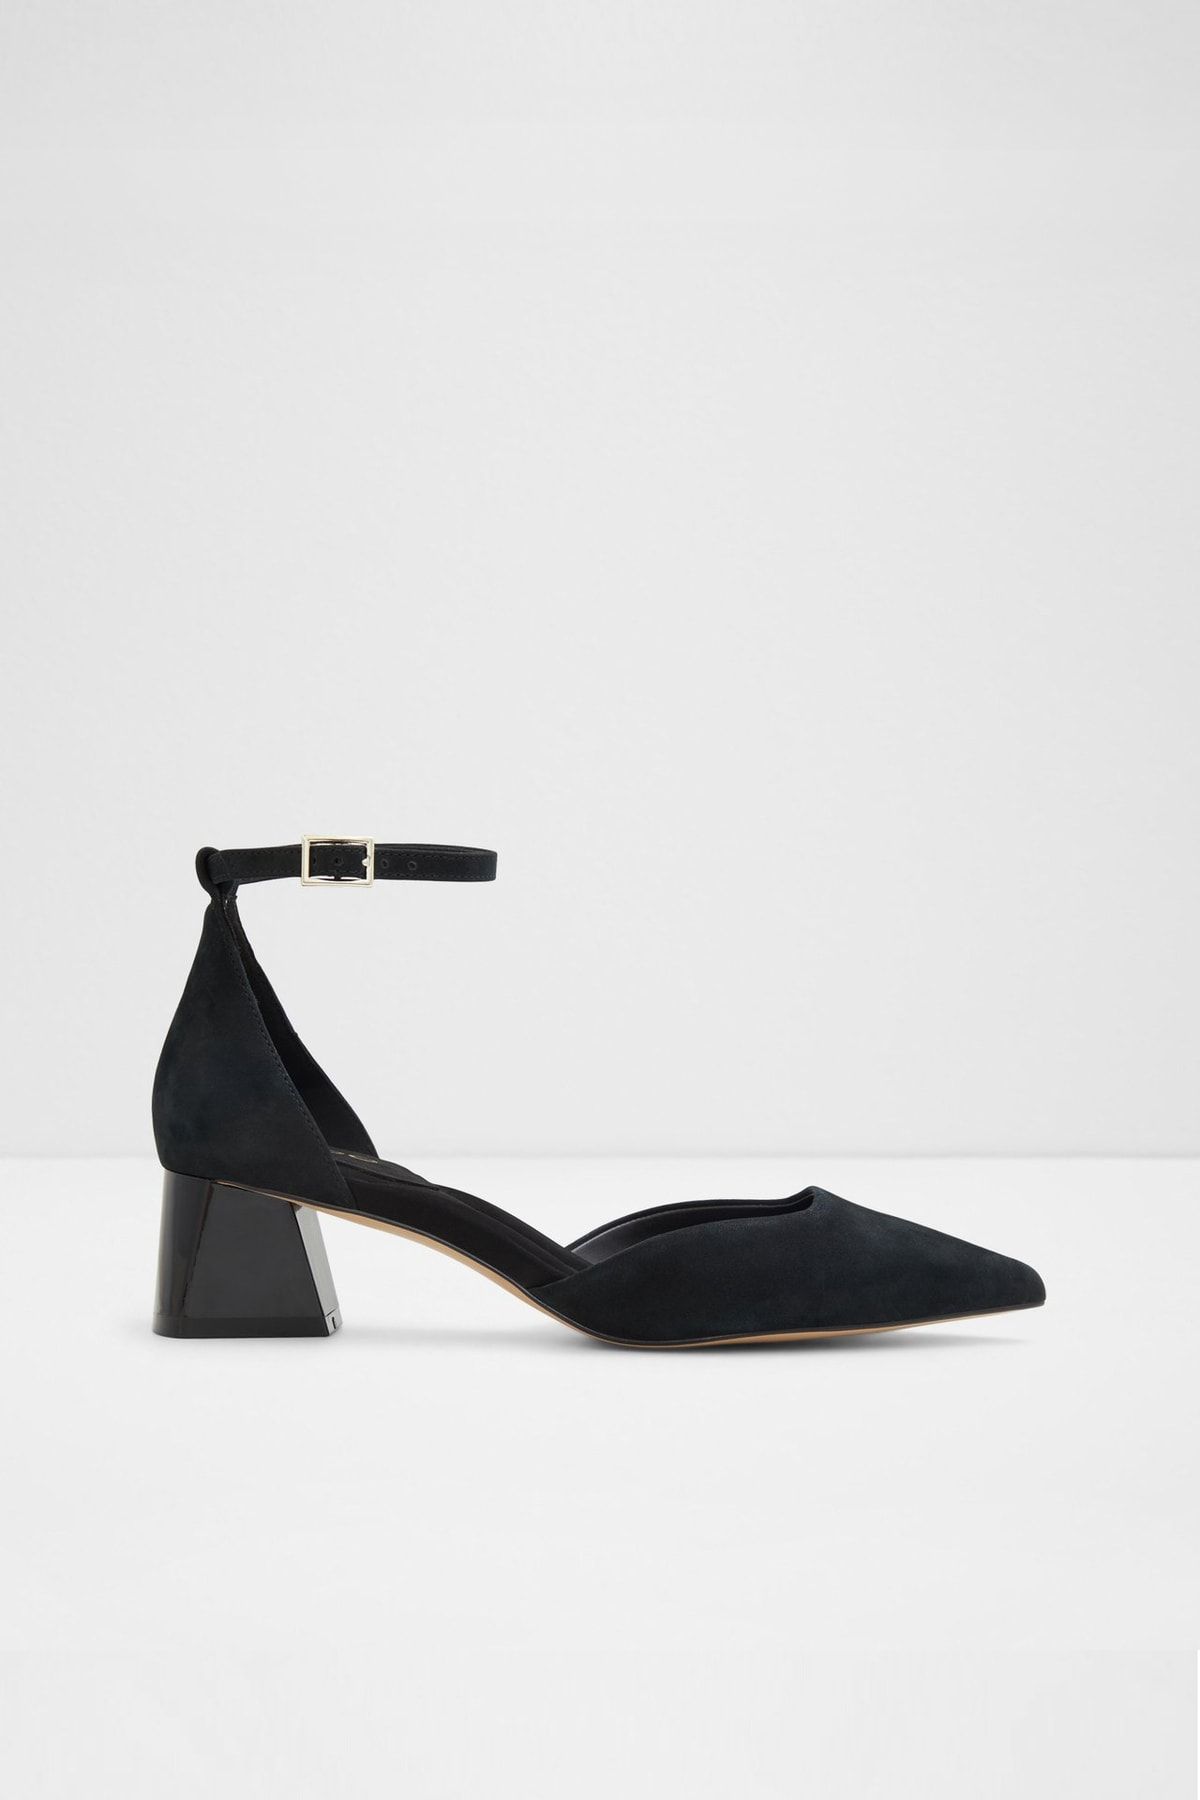 Aldo Sabıya - Siyah Kadın Topuklu Ayakkabı